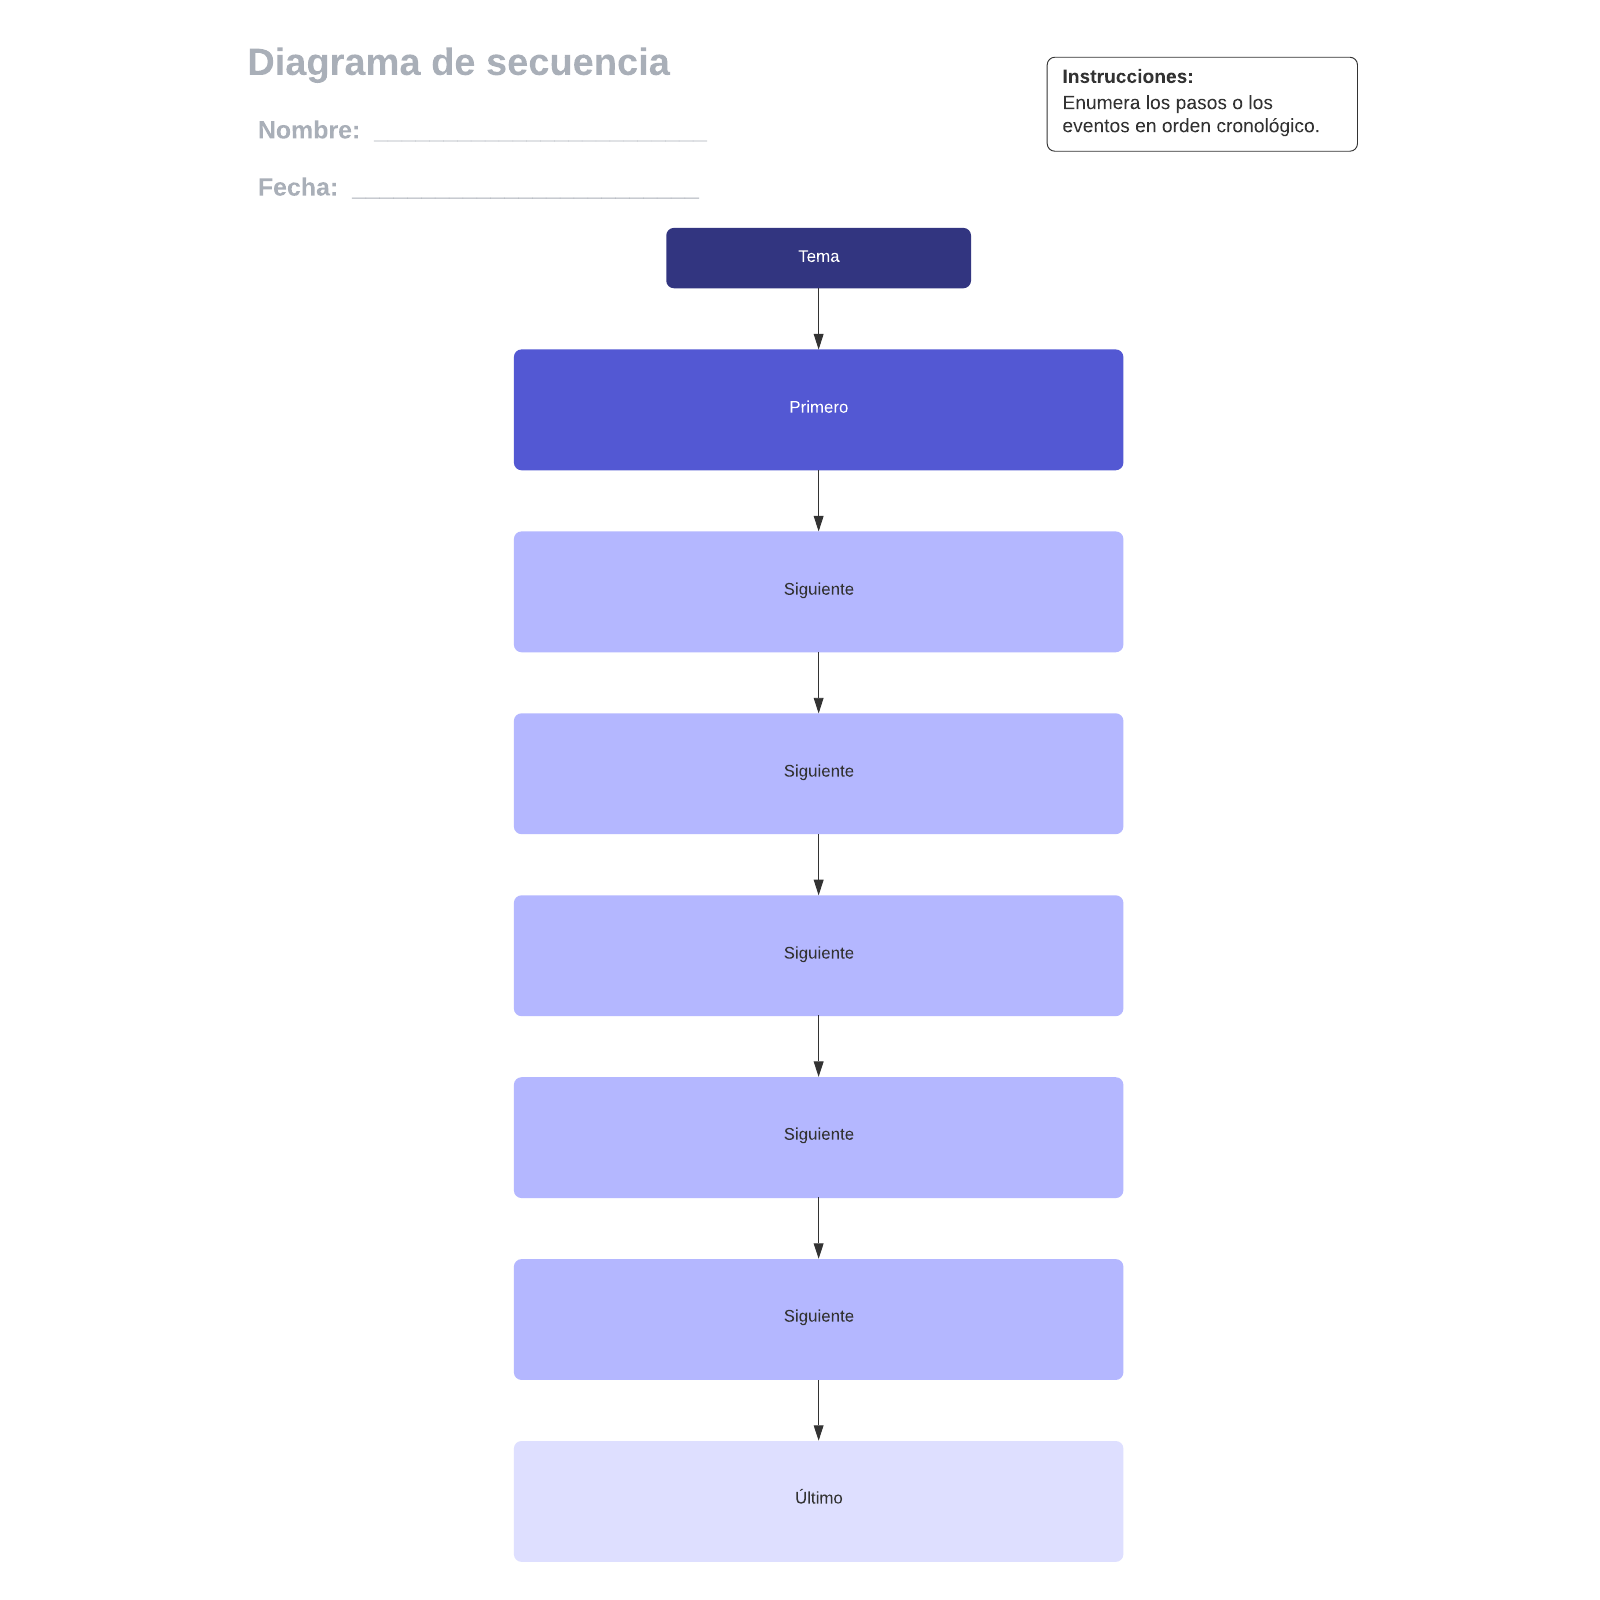 Diagrama de secuencia example